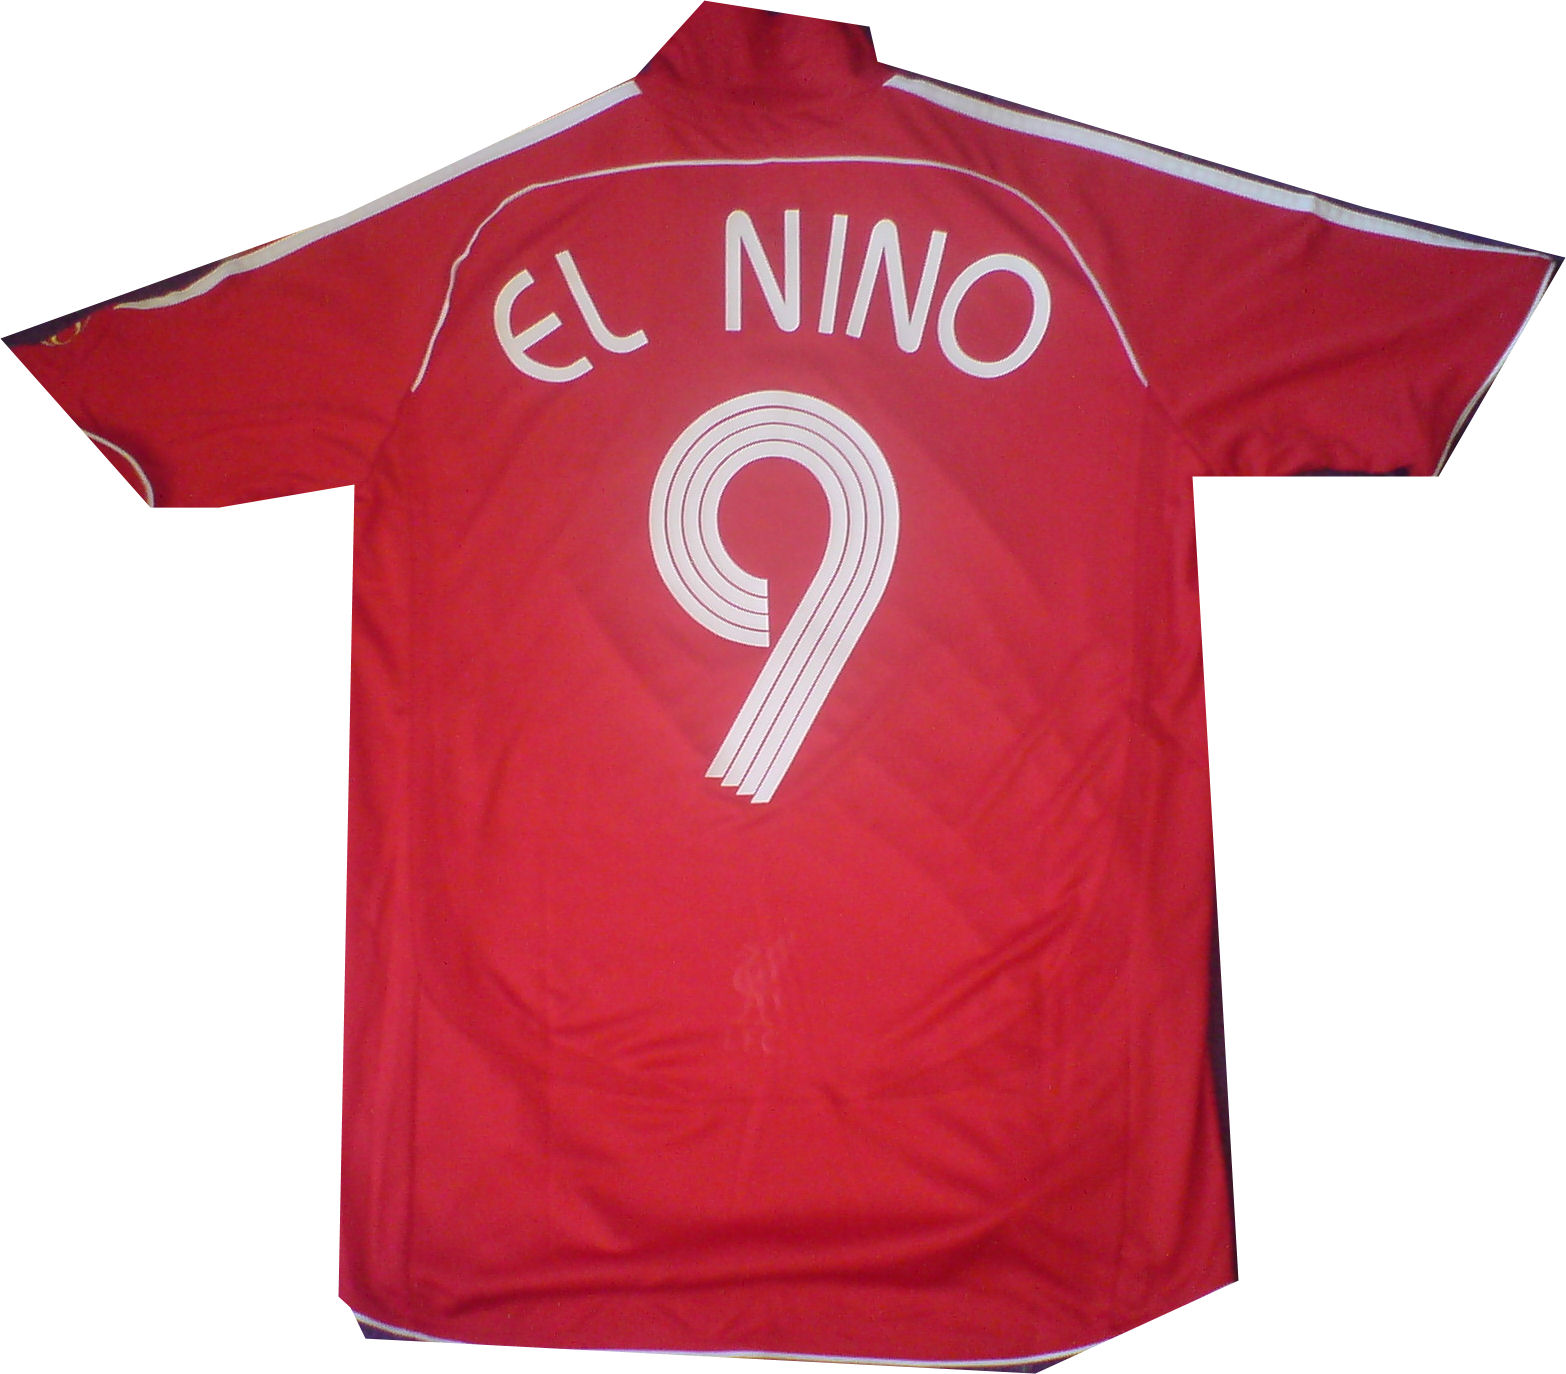 Adidas 07-08 Liverpool home (El Nino 9)